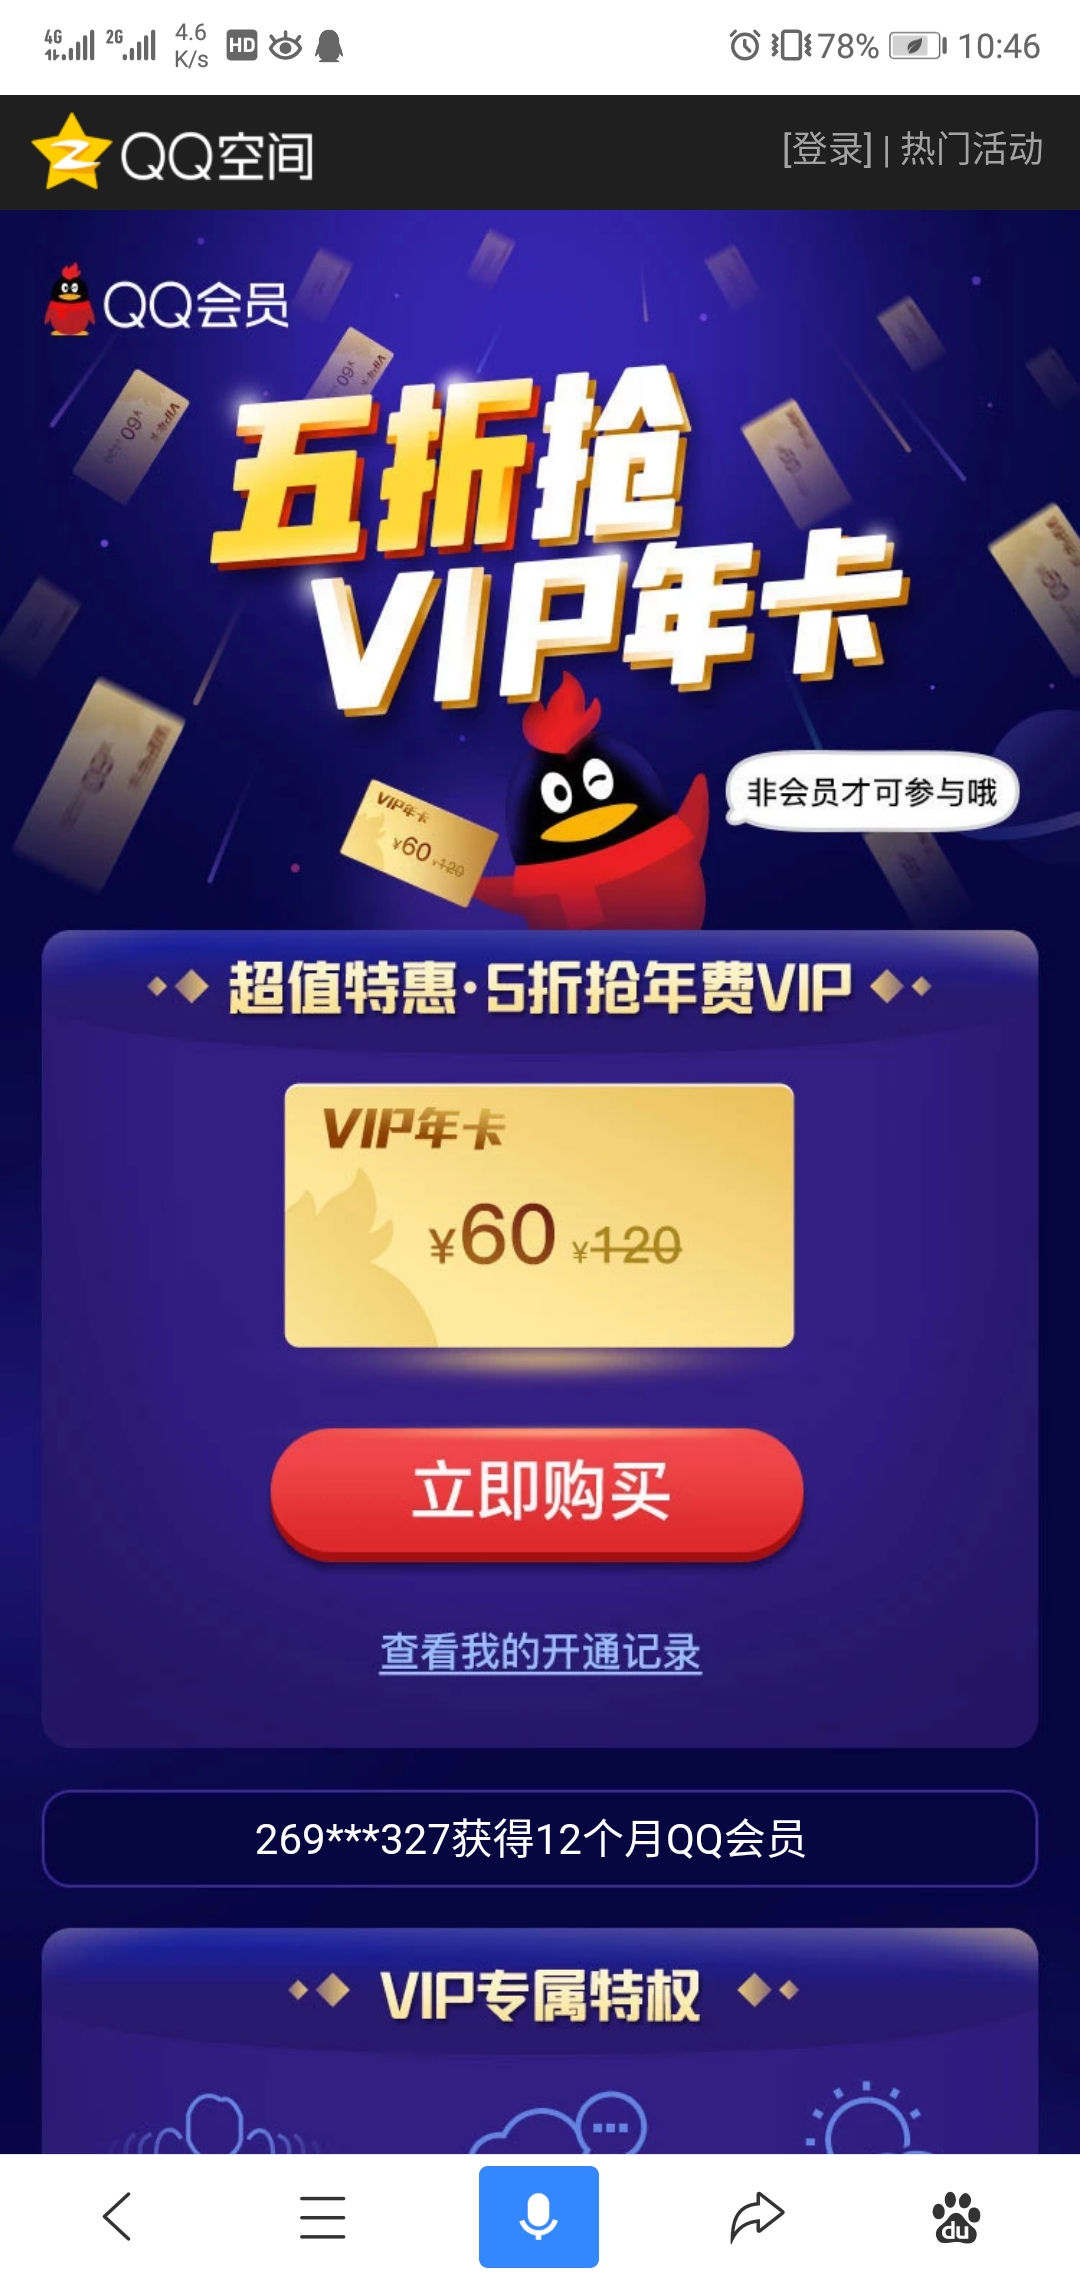 五折抢VIP年卡 60元开通1年QQ会员 仅限非QQ会员用户-第1张图片